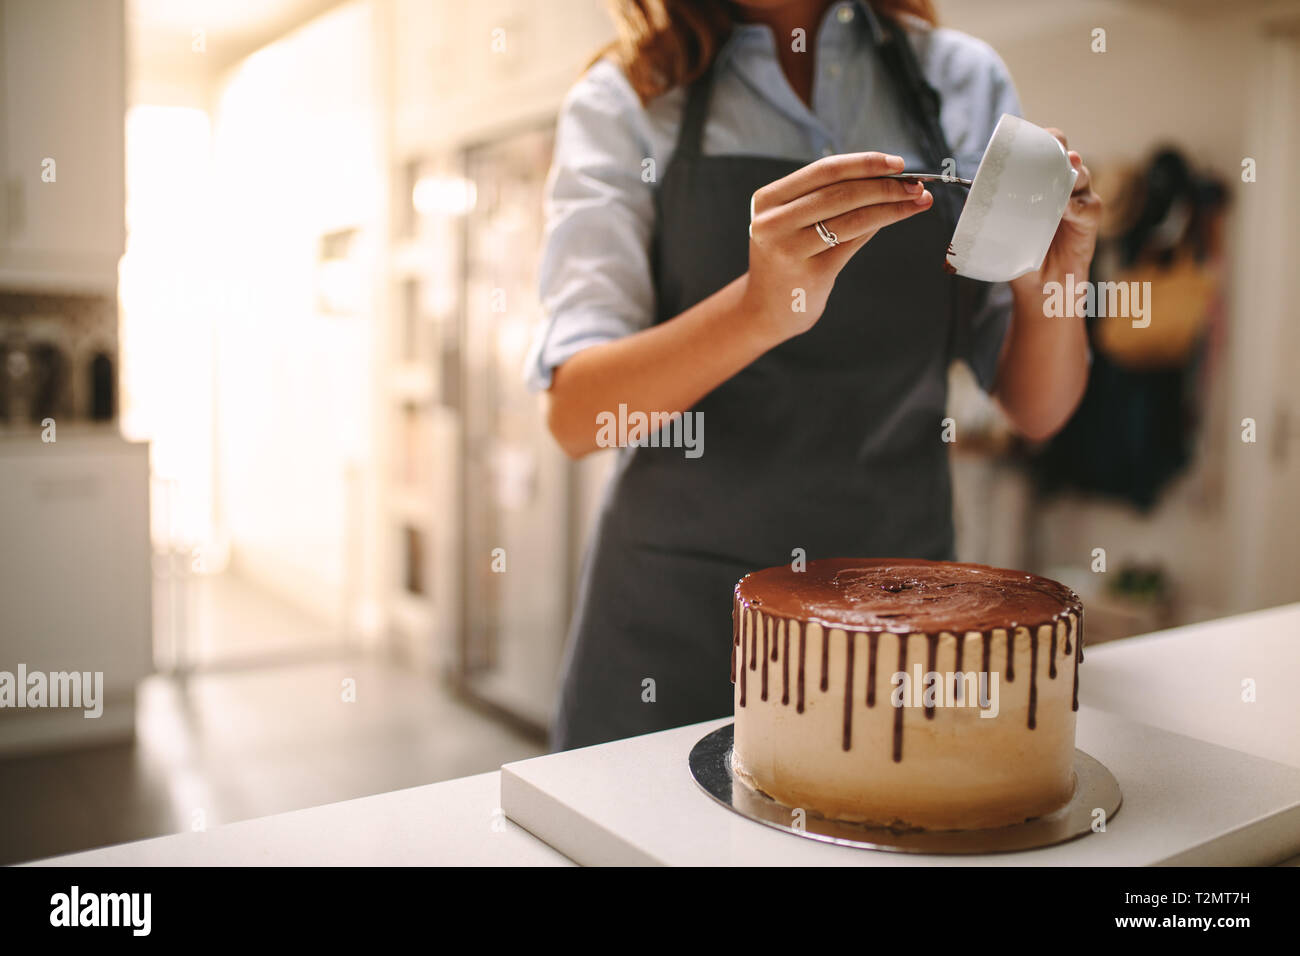 Chef pâtissier dans la cuisine Décorer un gâteau de chocolat. Femme en tablier pouring liquid sur un gâteau au chocolat sur comptoir de la cuisine. Banque D'Images